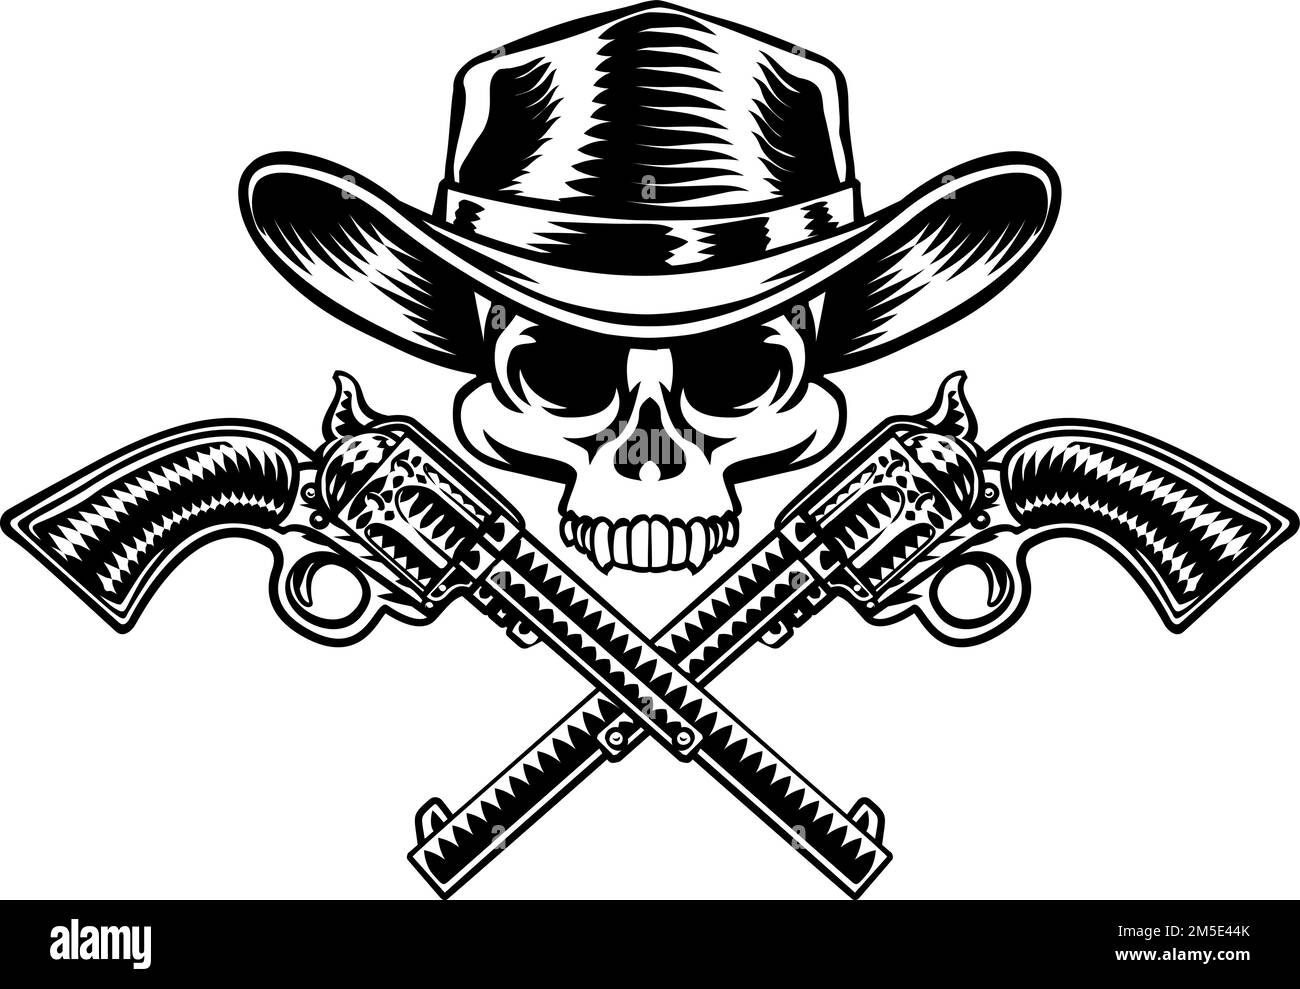 Cowboy Hat Pistols Skull Pirate Cross Bones Stock Vector Image & Art ...